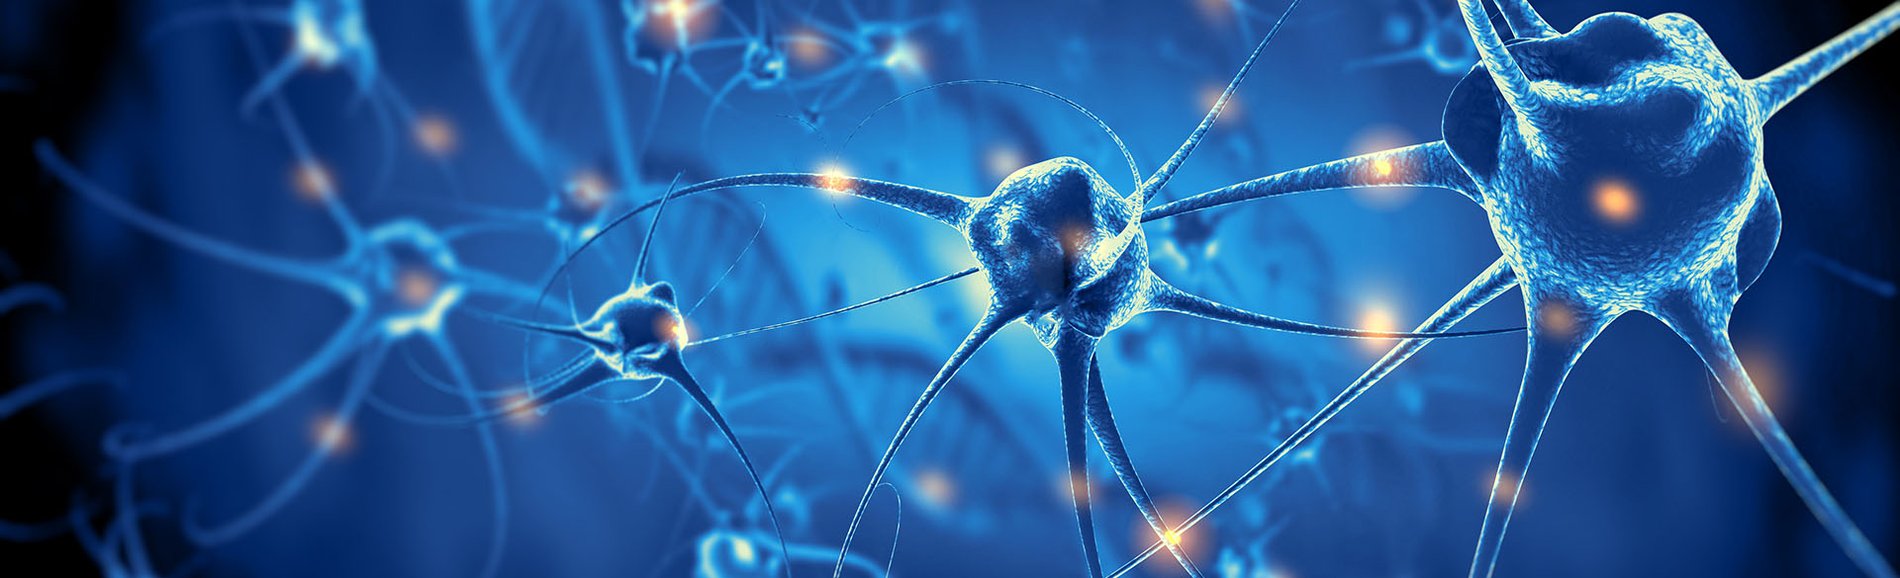 Nerve cells floating in blue background